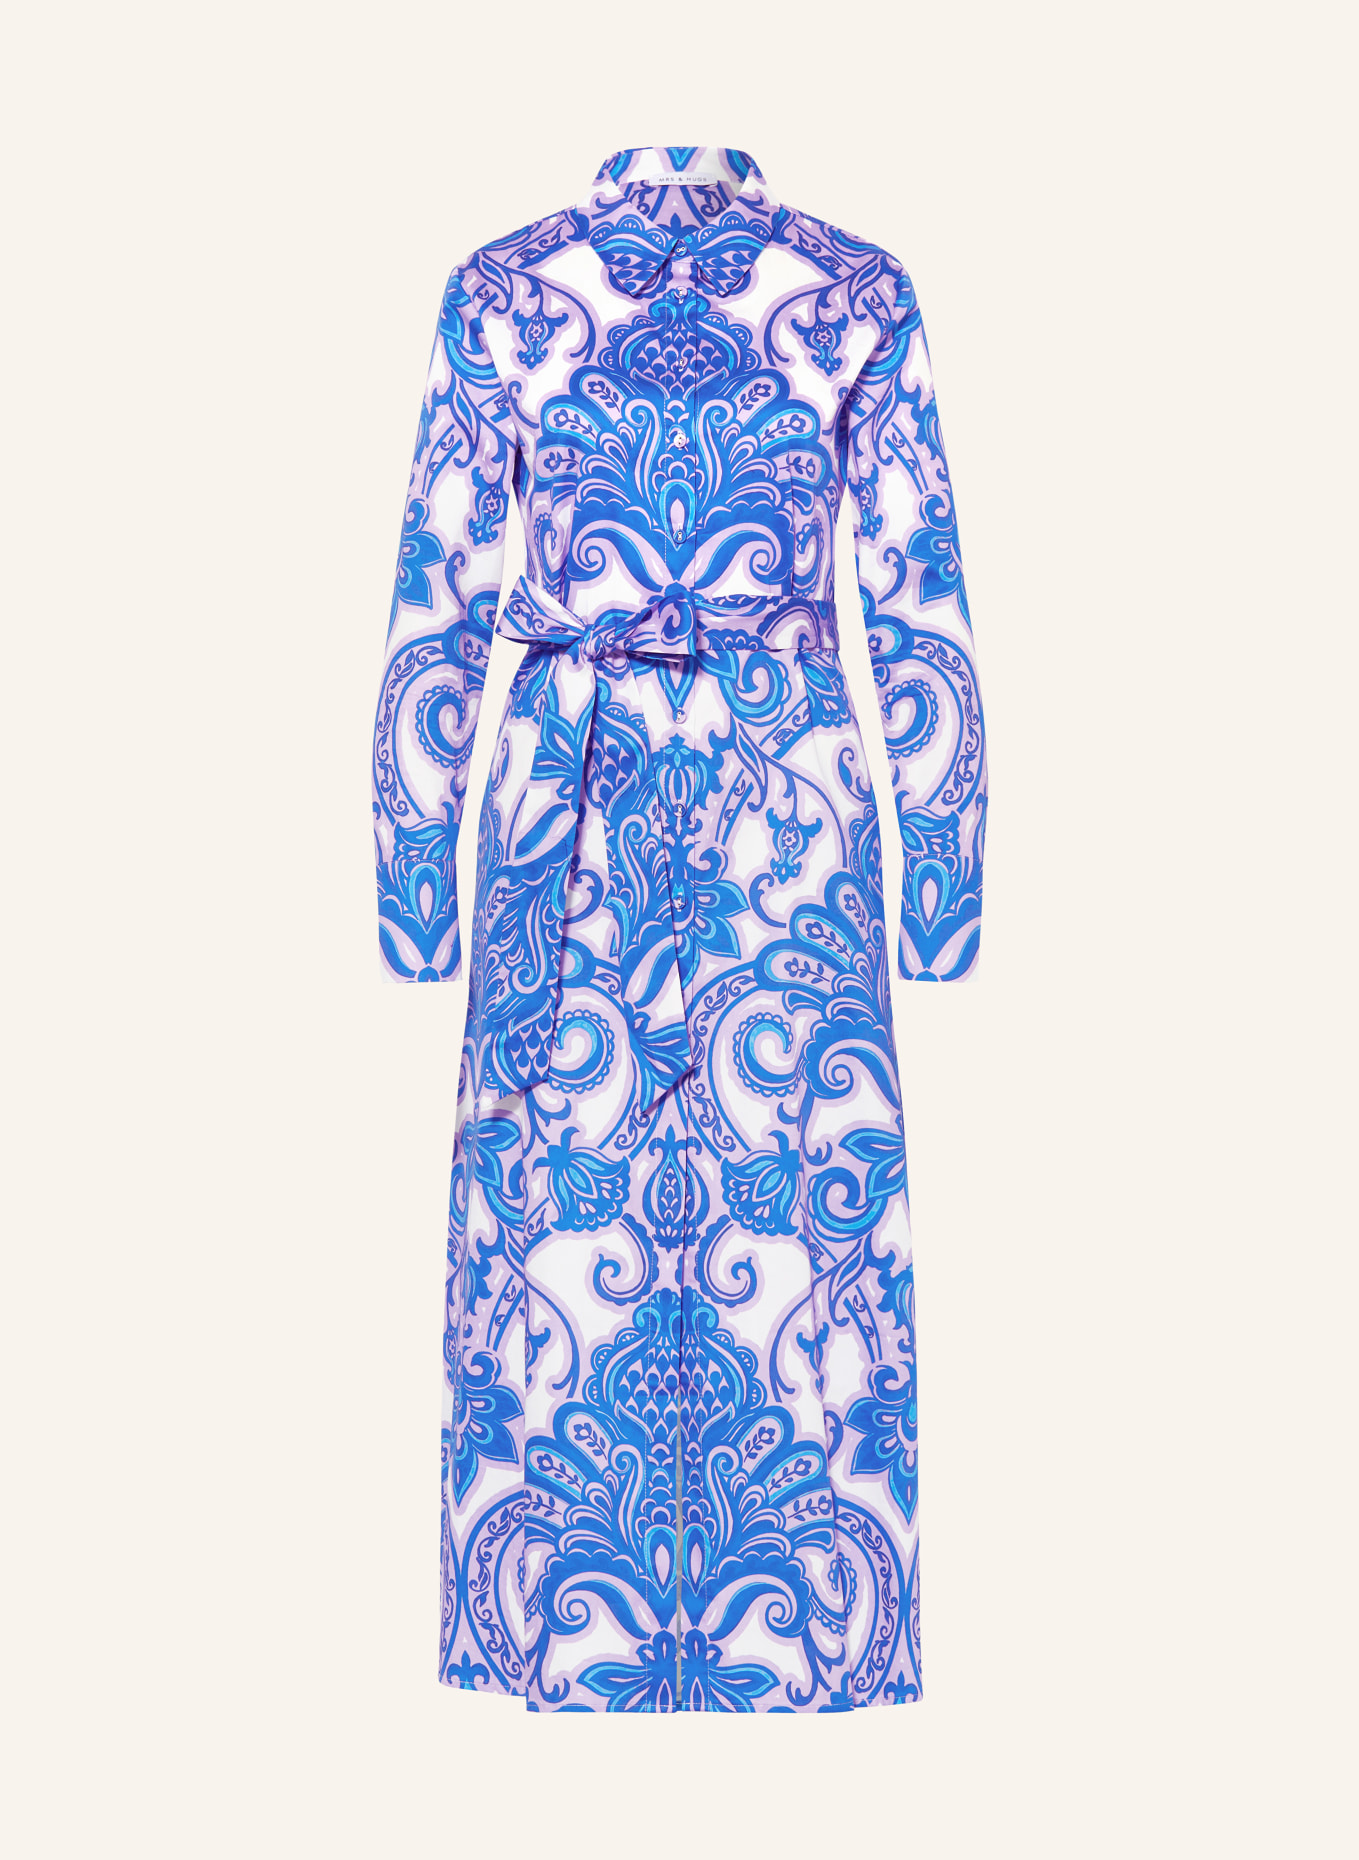 MRS & HUGS Shirt dress, Color: BLUE/ WHITE/ LIGHT PURPLE (Image 1)